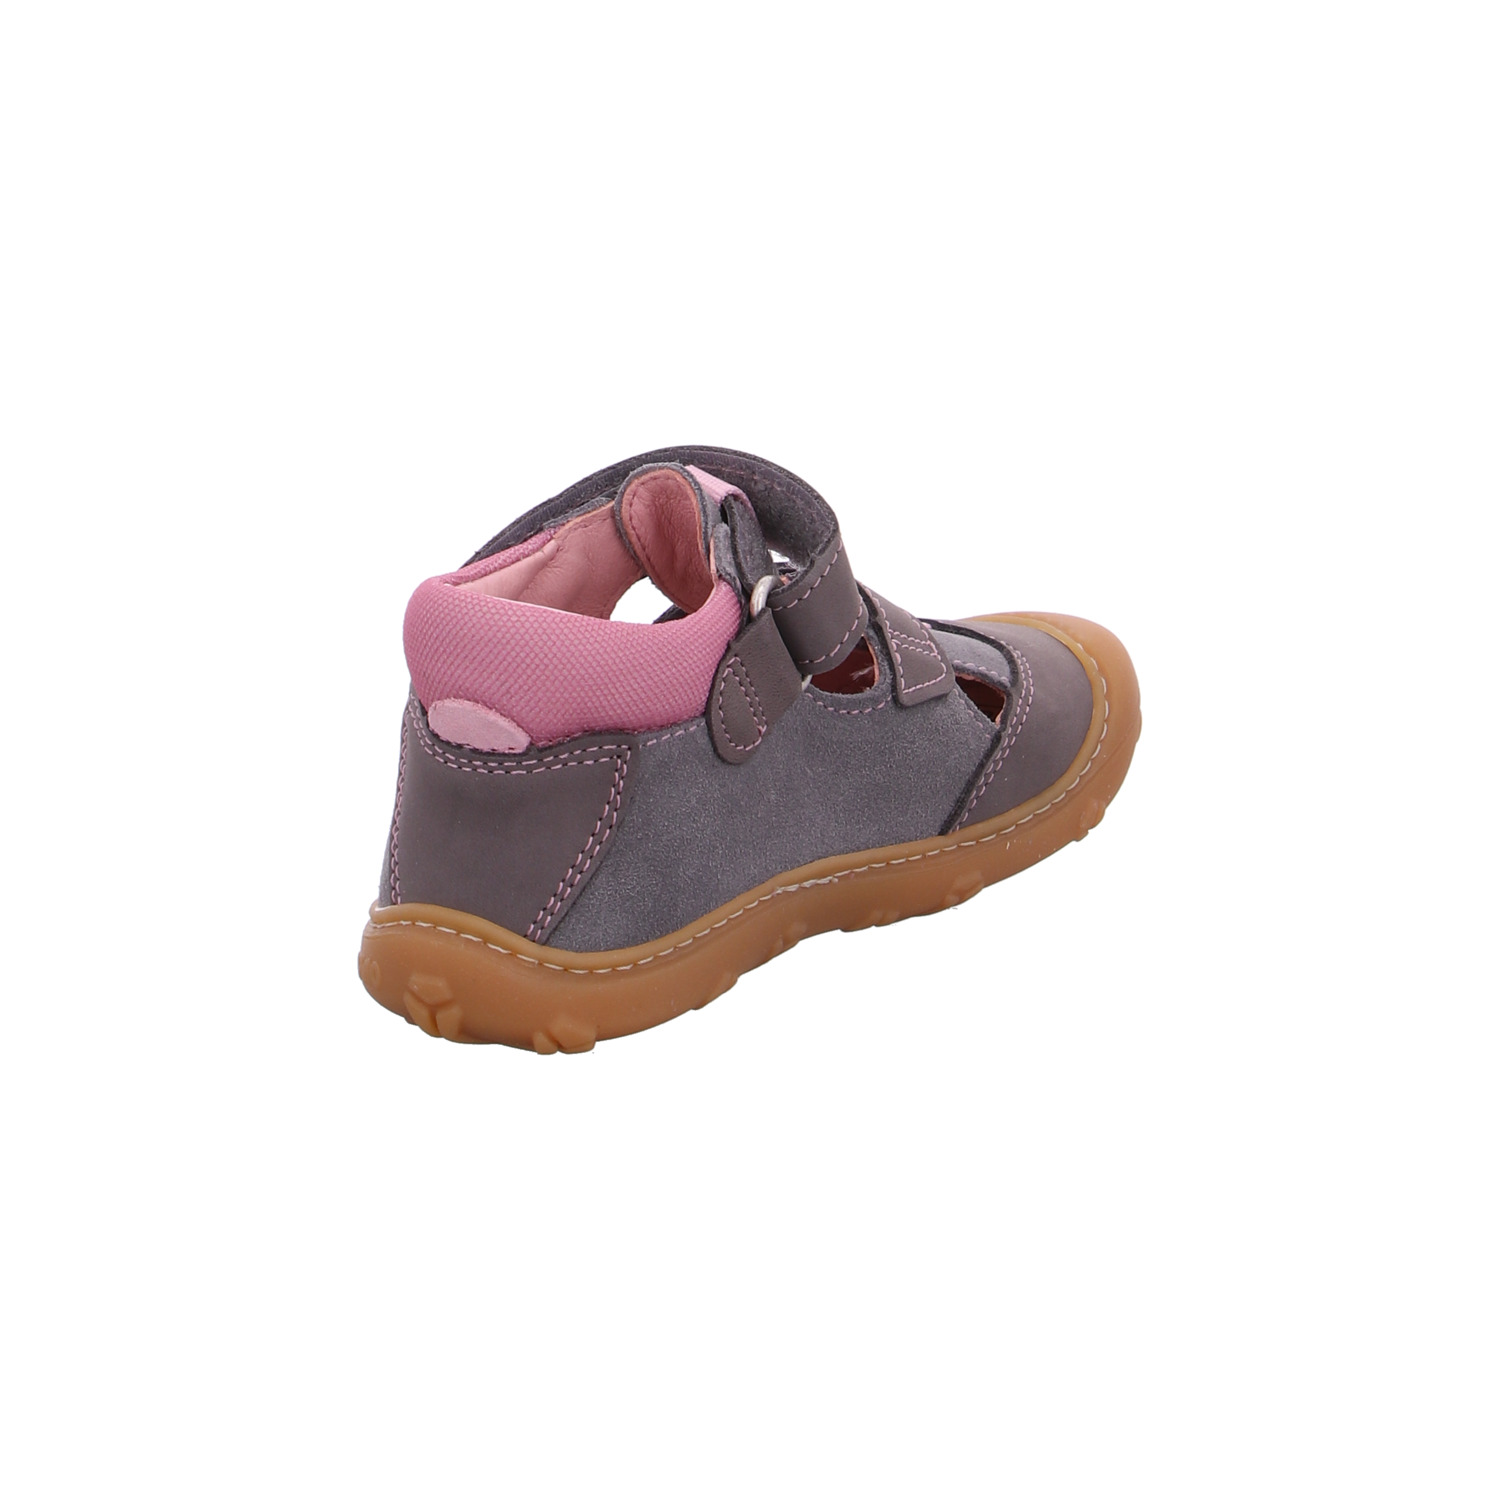 ricosta-kinder-sandaletten-mädchen-grau-126068-19